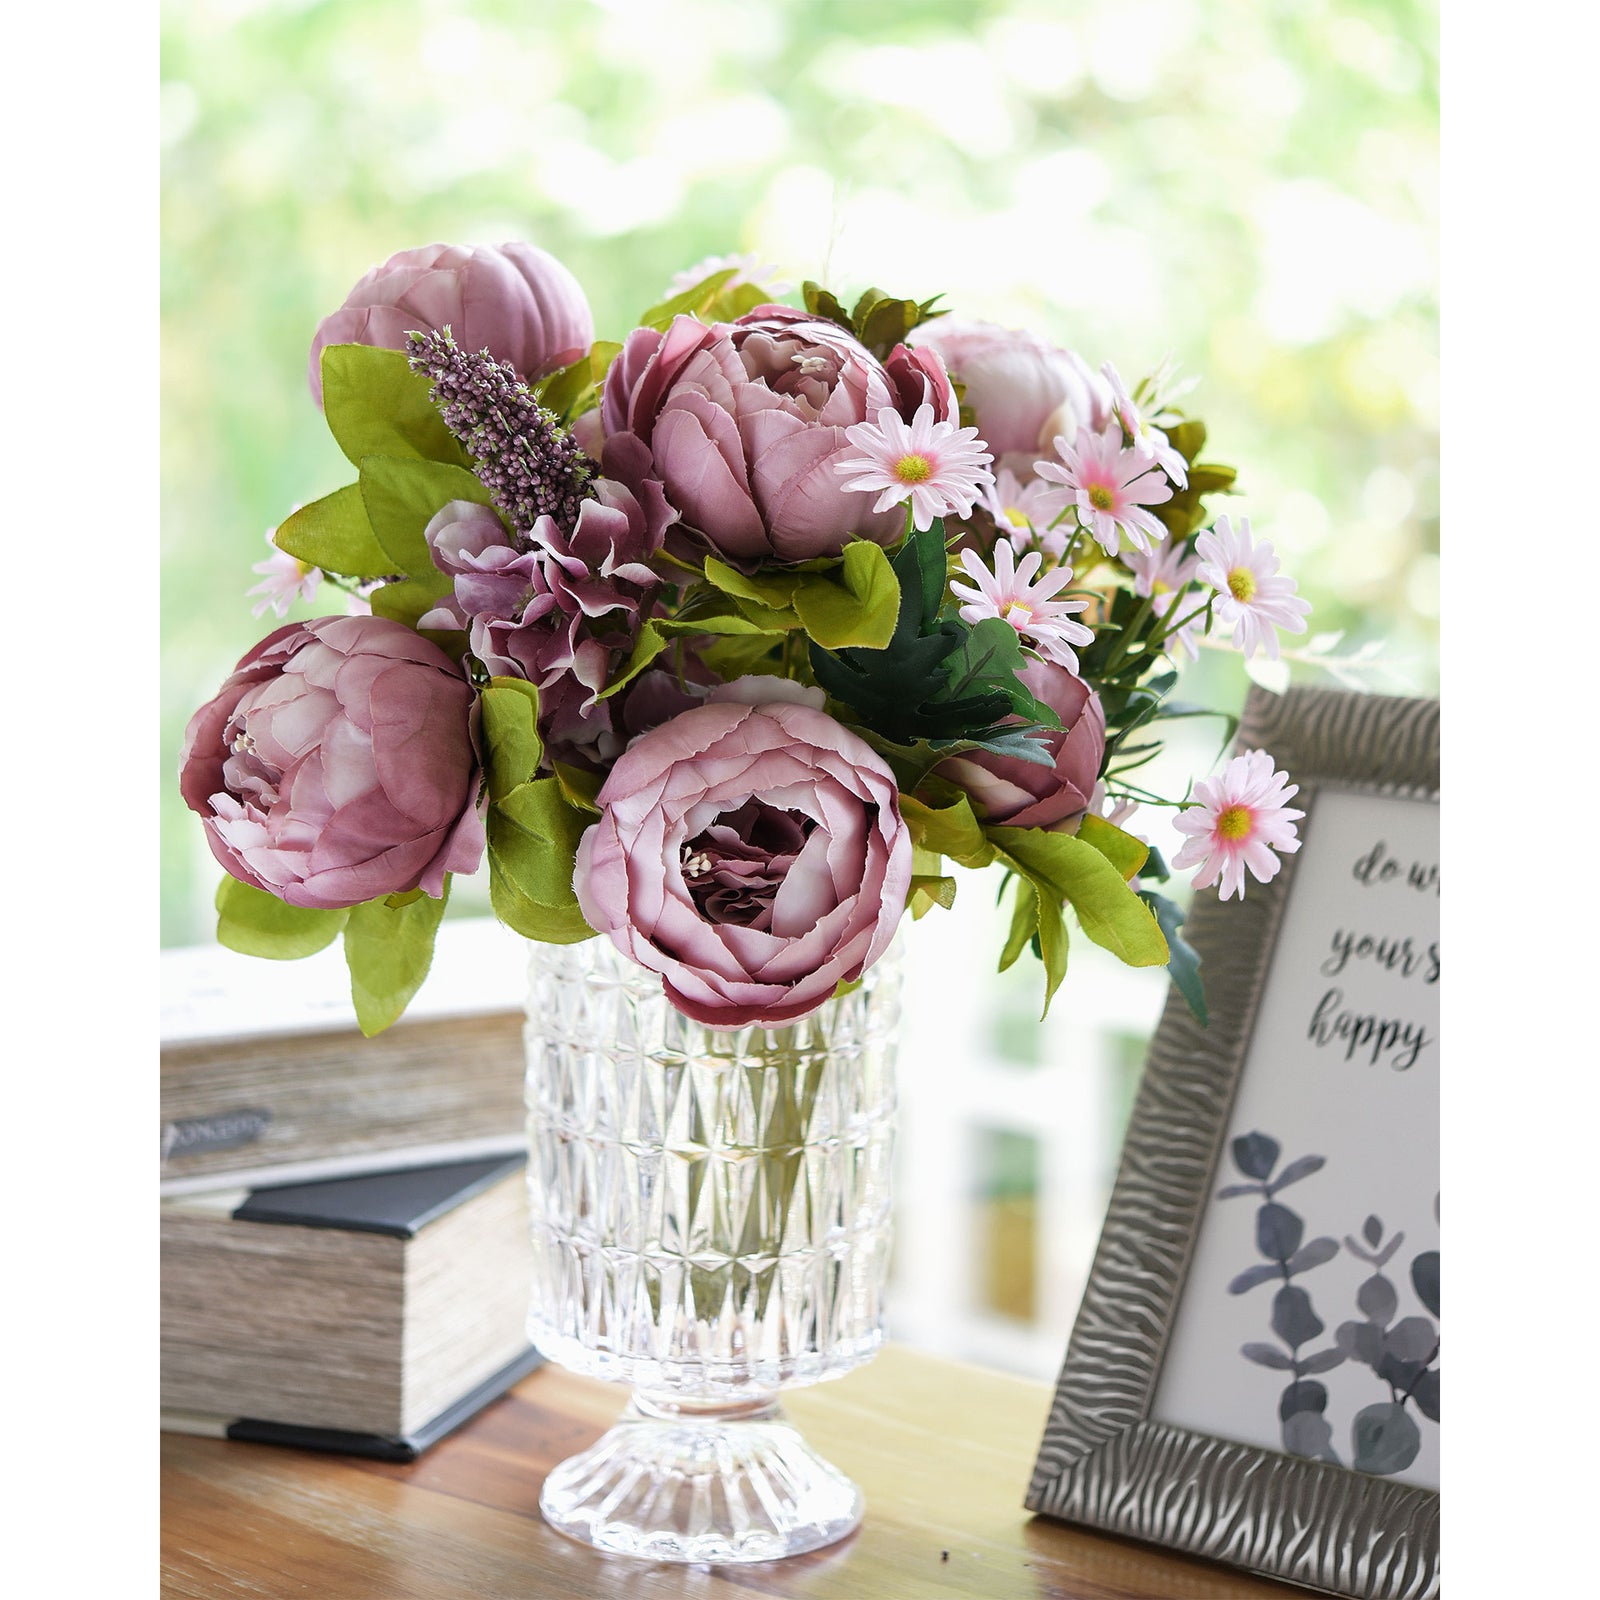 Bohemian Pink Light Mauve Peony and Pink Daisy Mix Flower Bouquet Artificial Flowers Arrangement FiveSeasonStuff Floral